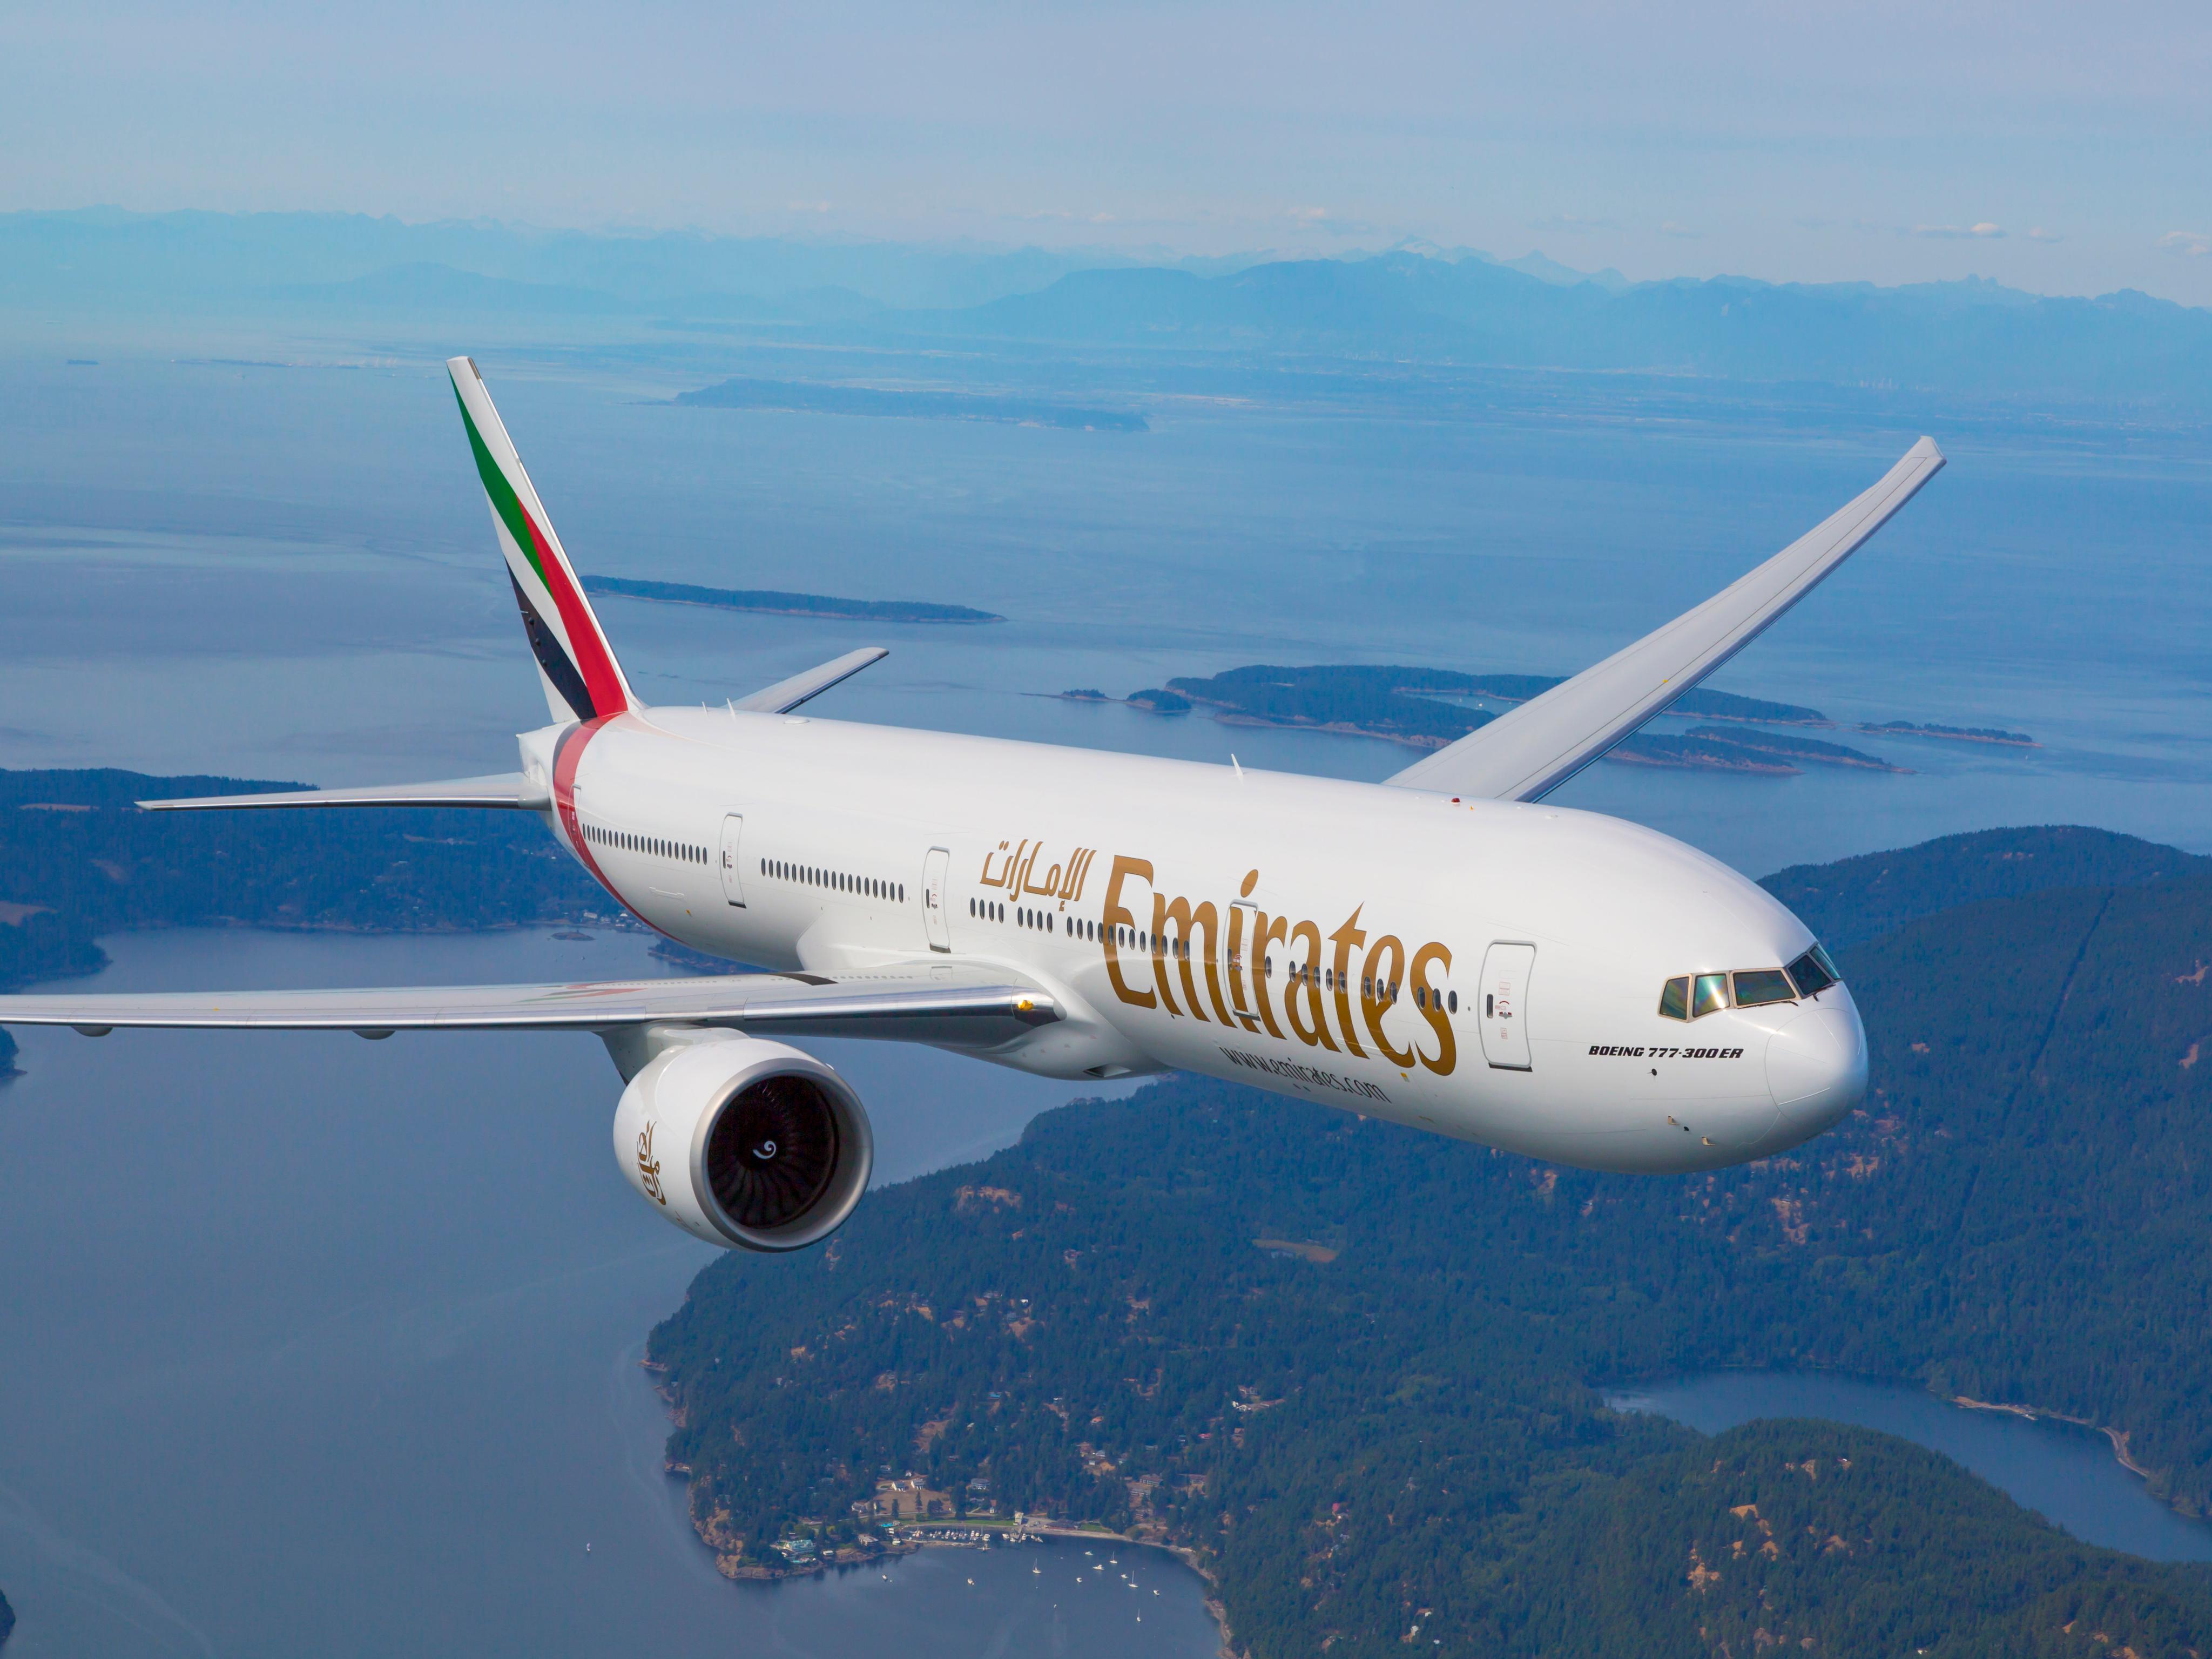 Emirates aircraft. PHOTO/COURTESY